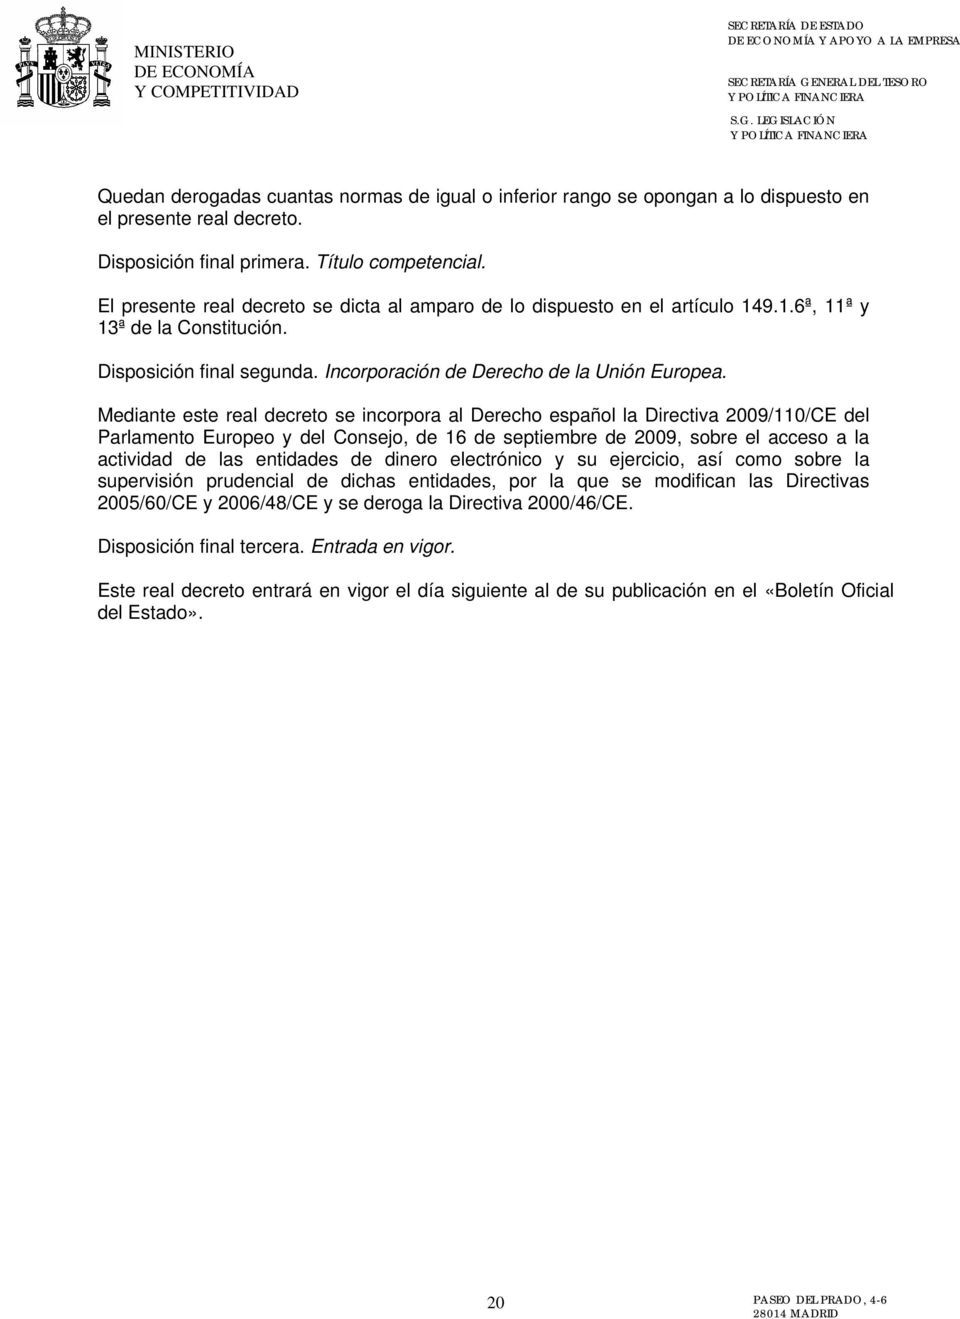 Mediante este real decreto se incorpora al Derecho español la Directiva 2009/110/CE del Parlamento Europeo y del Consejo, de 16 de septiembre de 2009, sobre el acceso a la actividad de las entidades